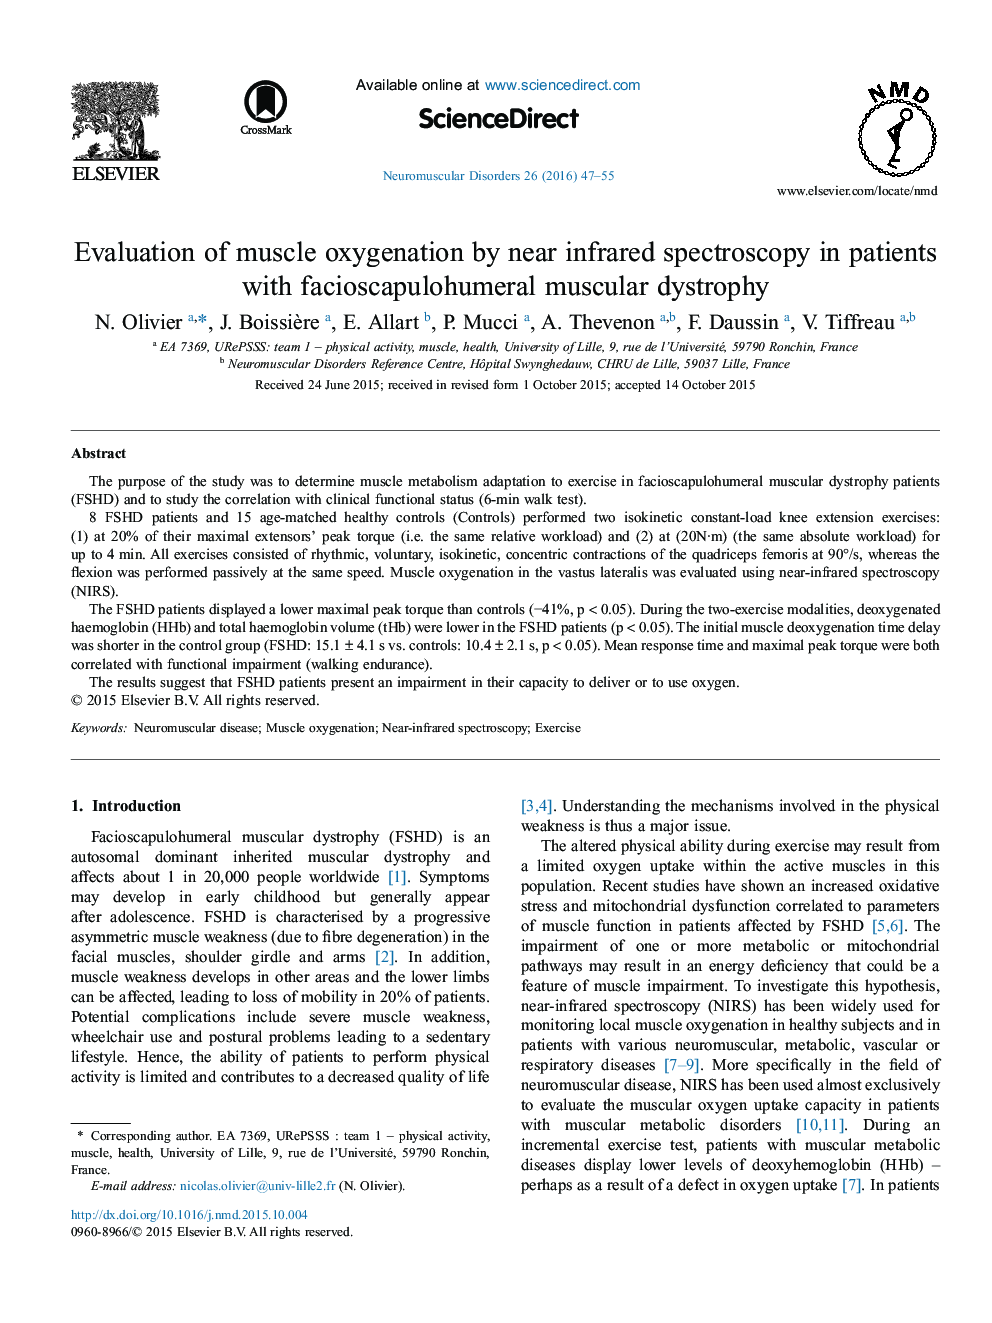 ارزیابی اکسیژن دهی عضله با طیف سنجی نزدیک به مادون قرمز در بیماران مبتلا به دیستروفی عضلانی فیبوساکاپولووومرال